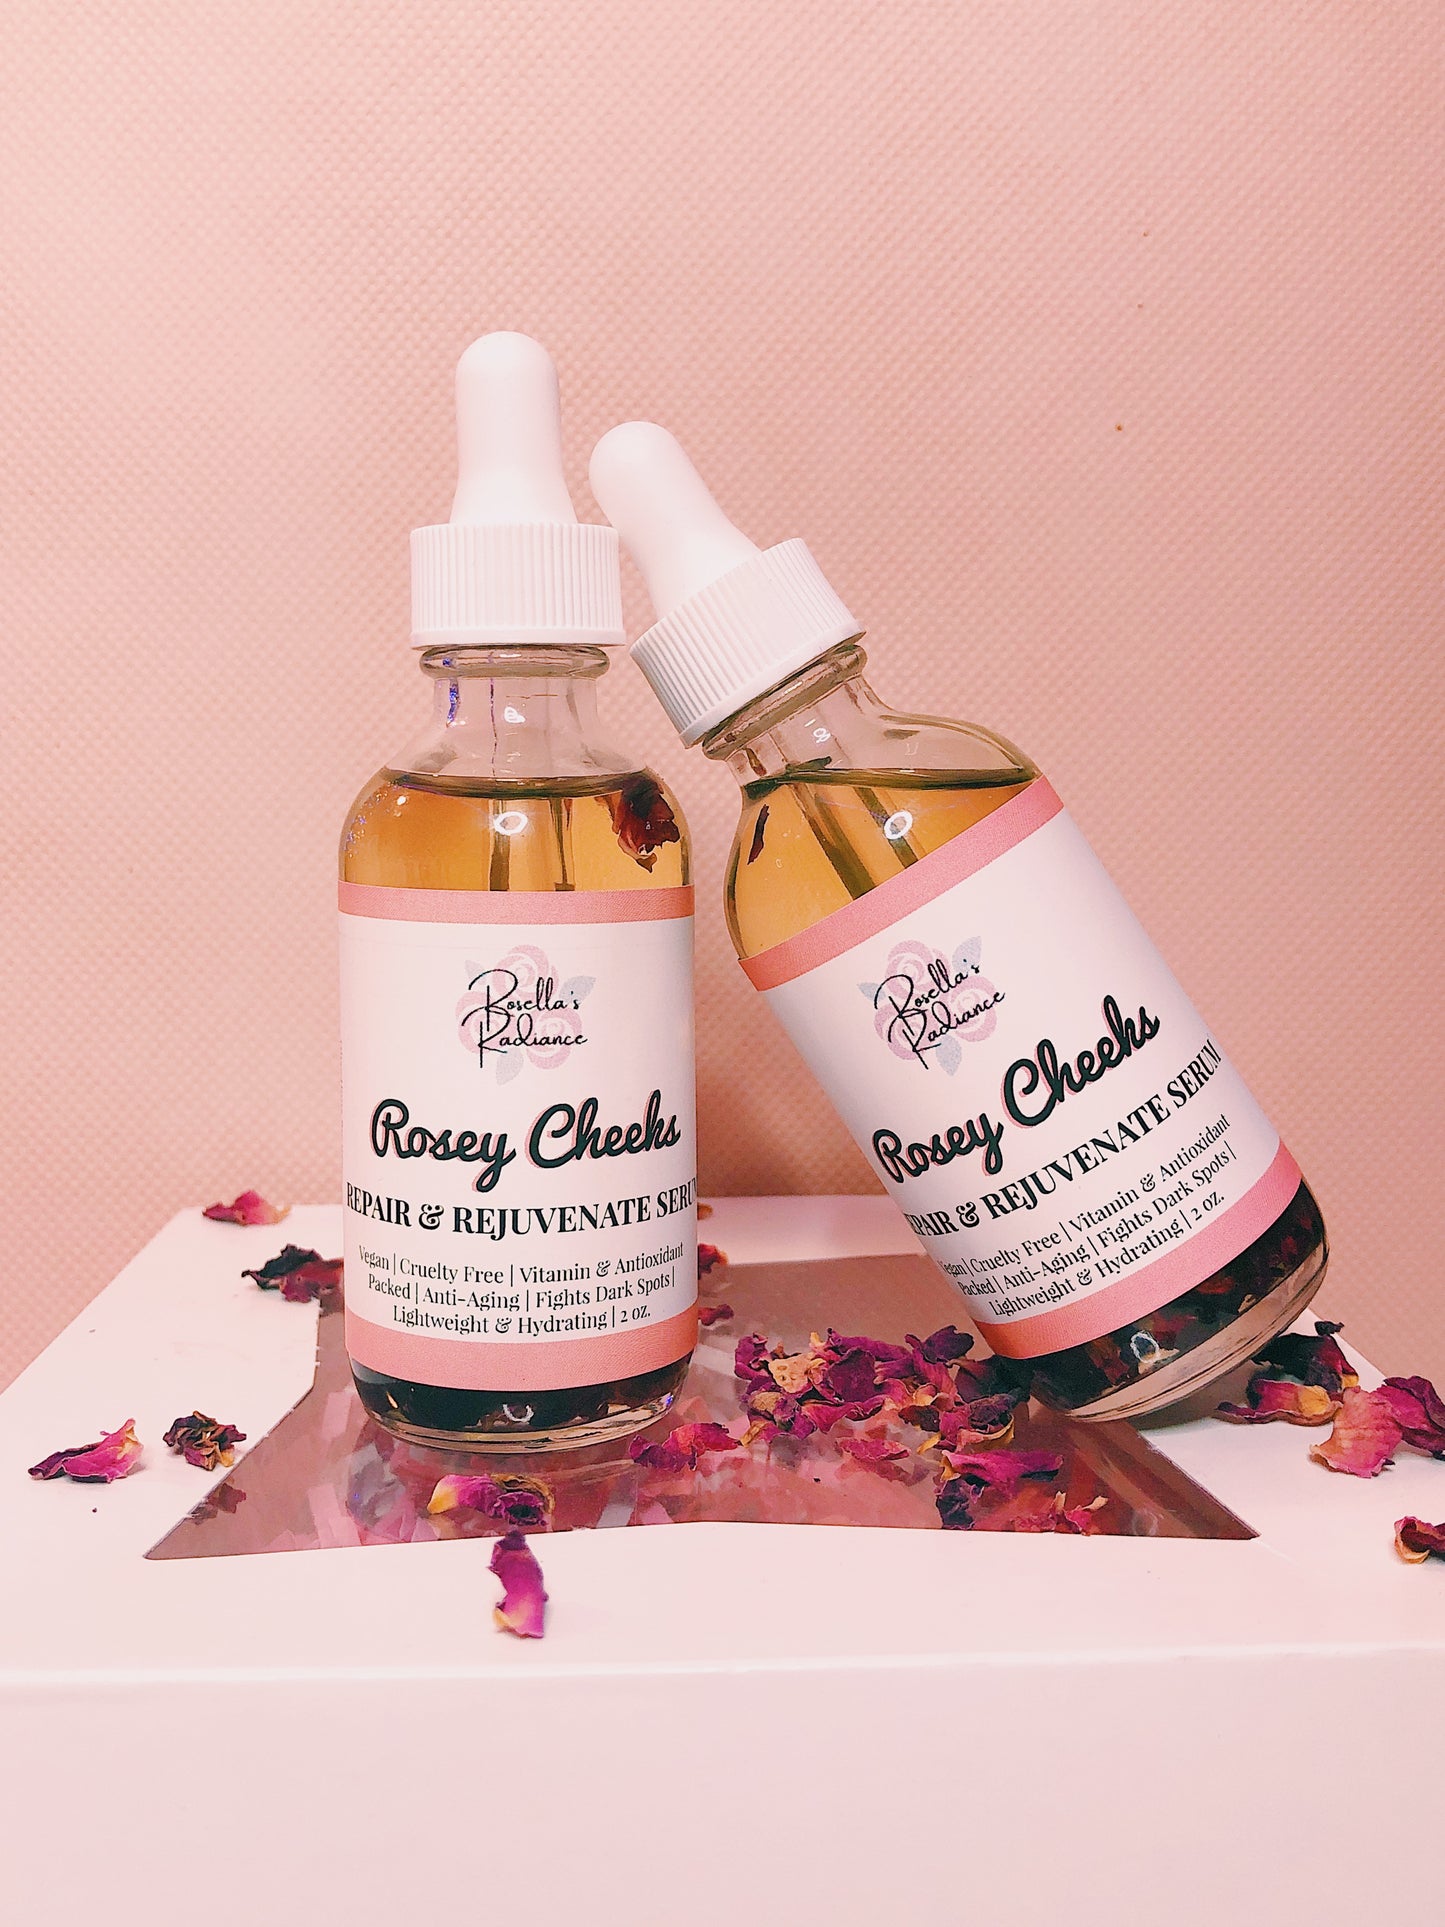 Rosey Cheeks Repair & Rejuvenate Serum